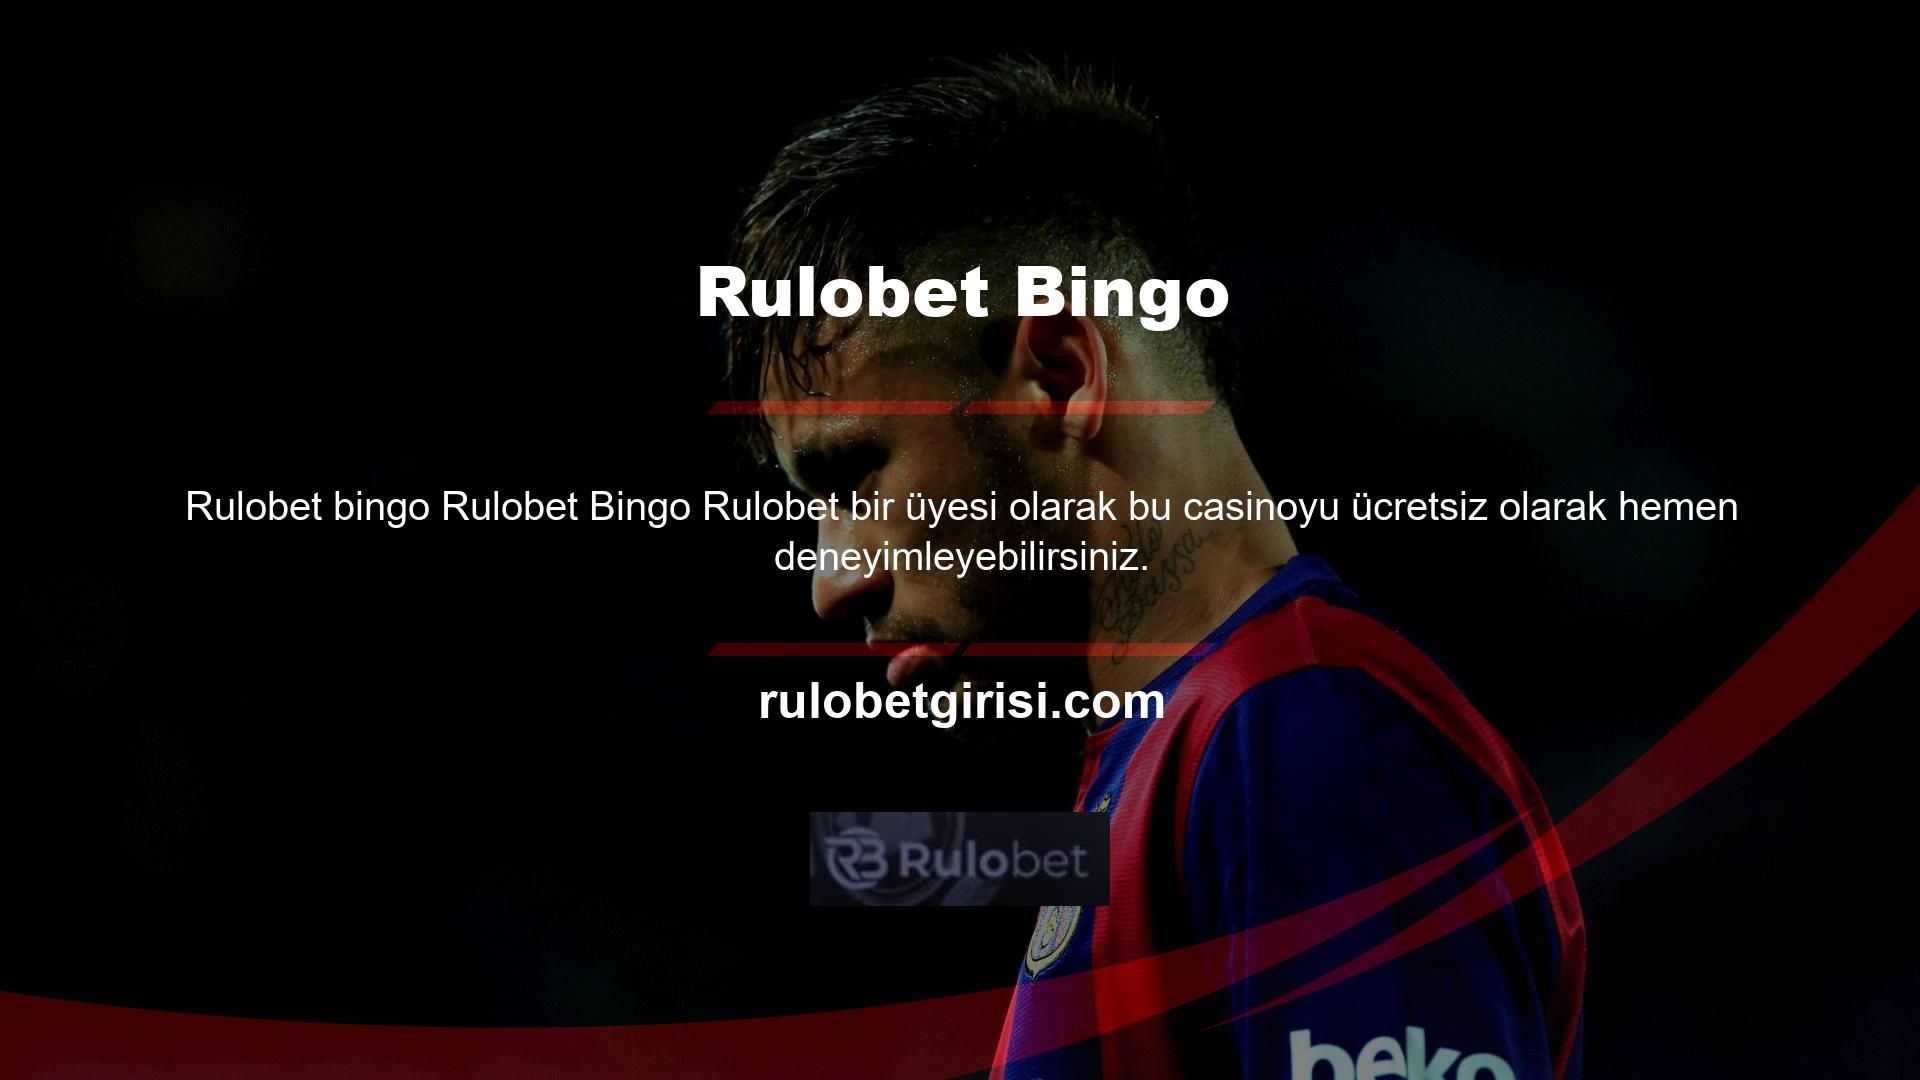 Rulobet Bingo, Rulobet Bingo web sitesinin kullanıcılarına sunduğu faydalı ve eğlenceli oyun seçeneklerinden sadece bir tanesidir